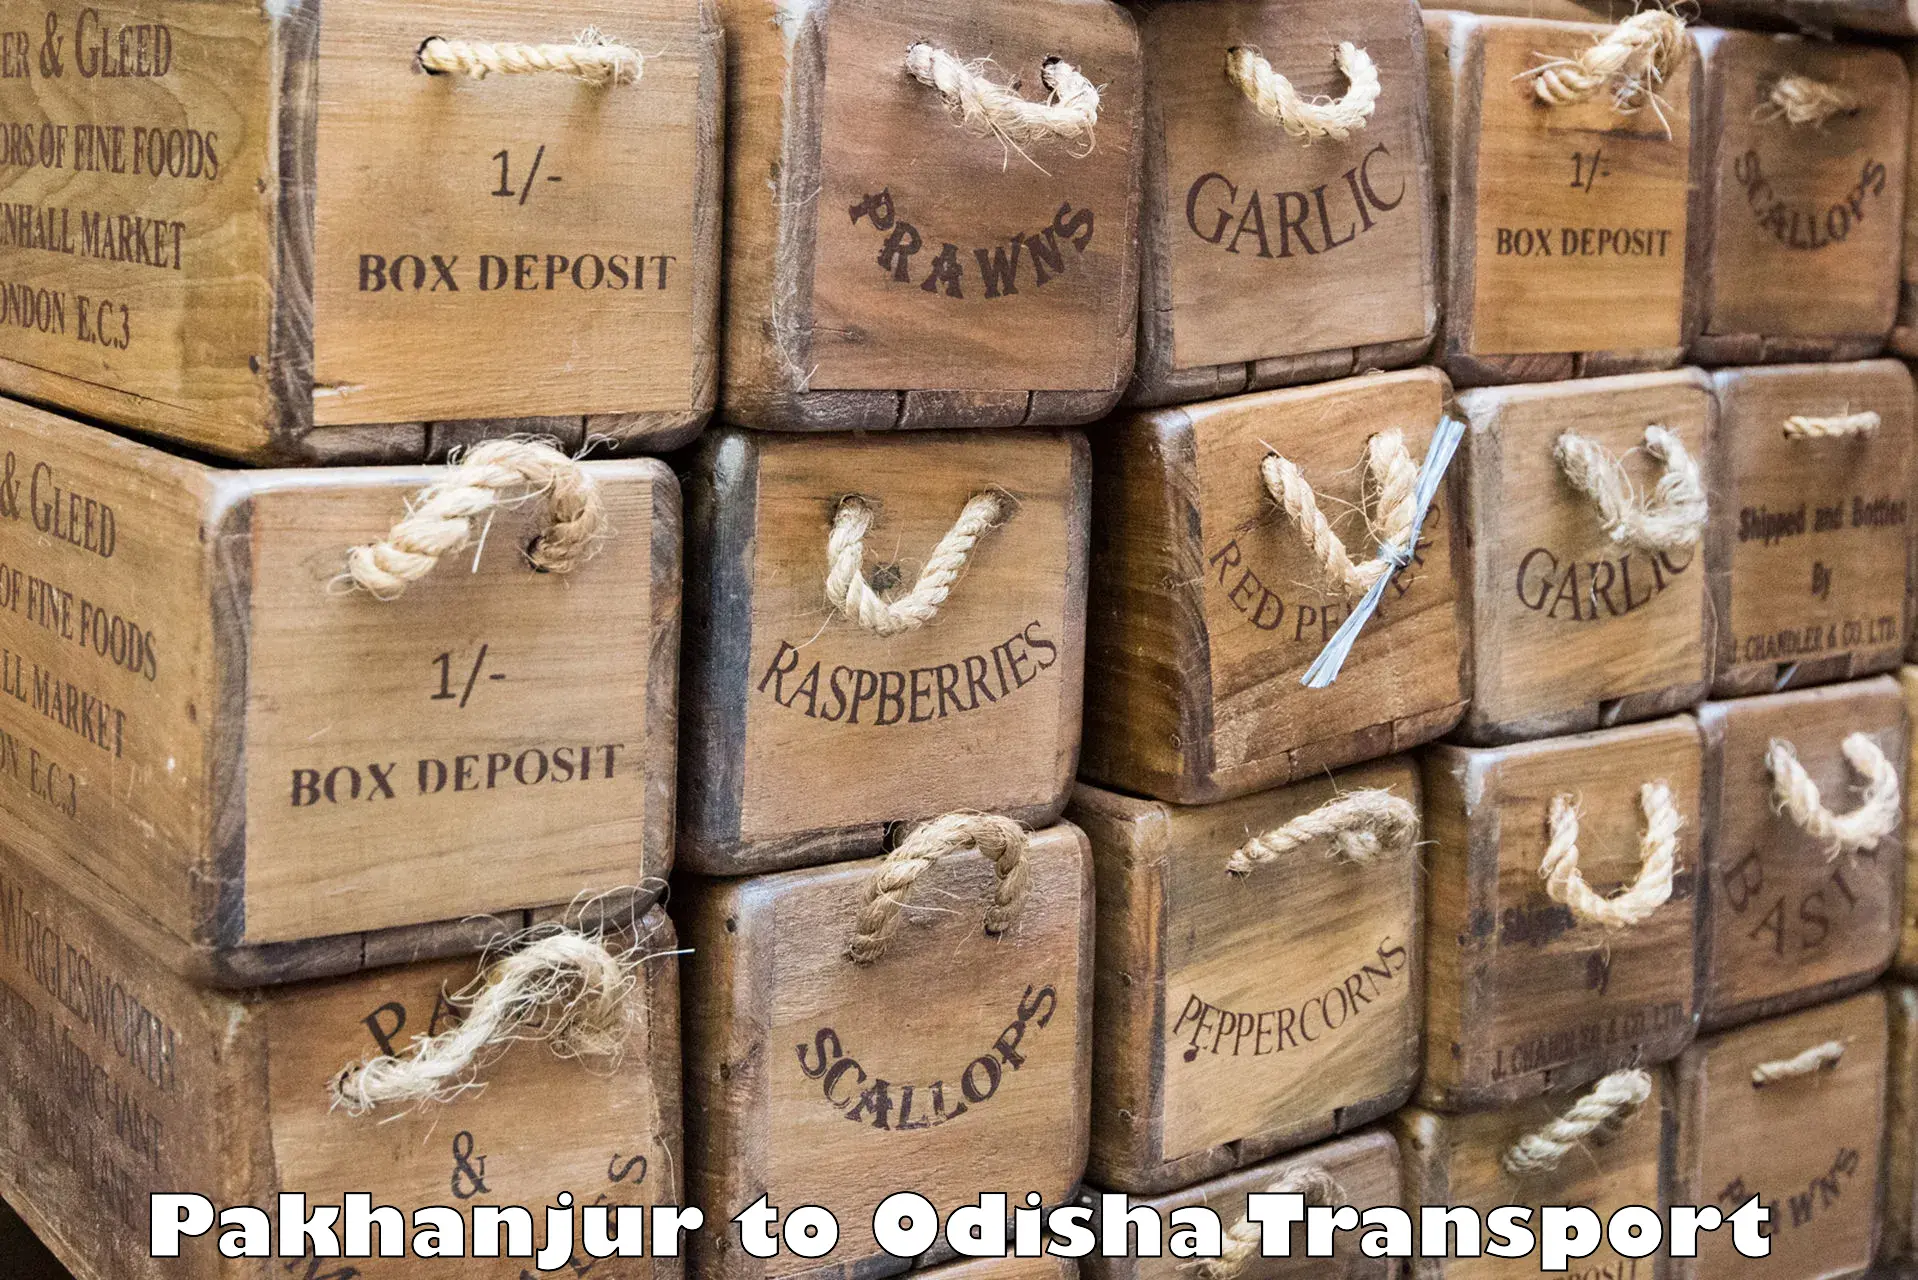 Pick up transport service Pakhanjur to Jaipatna